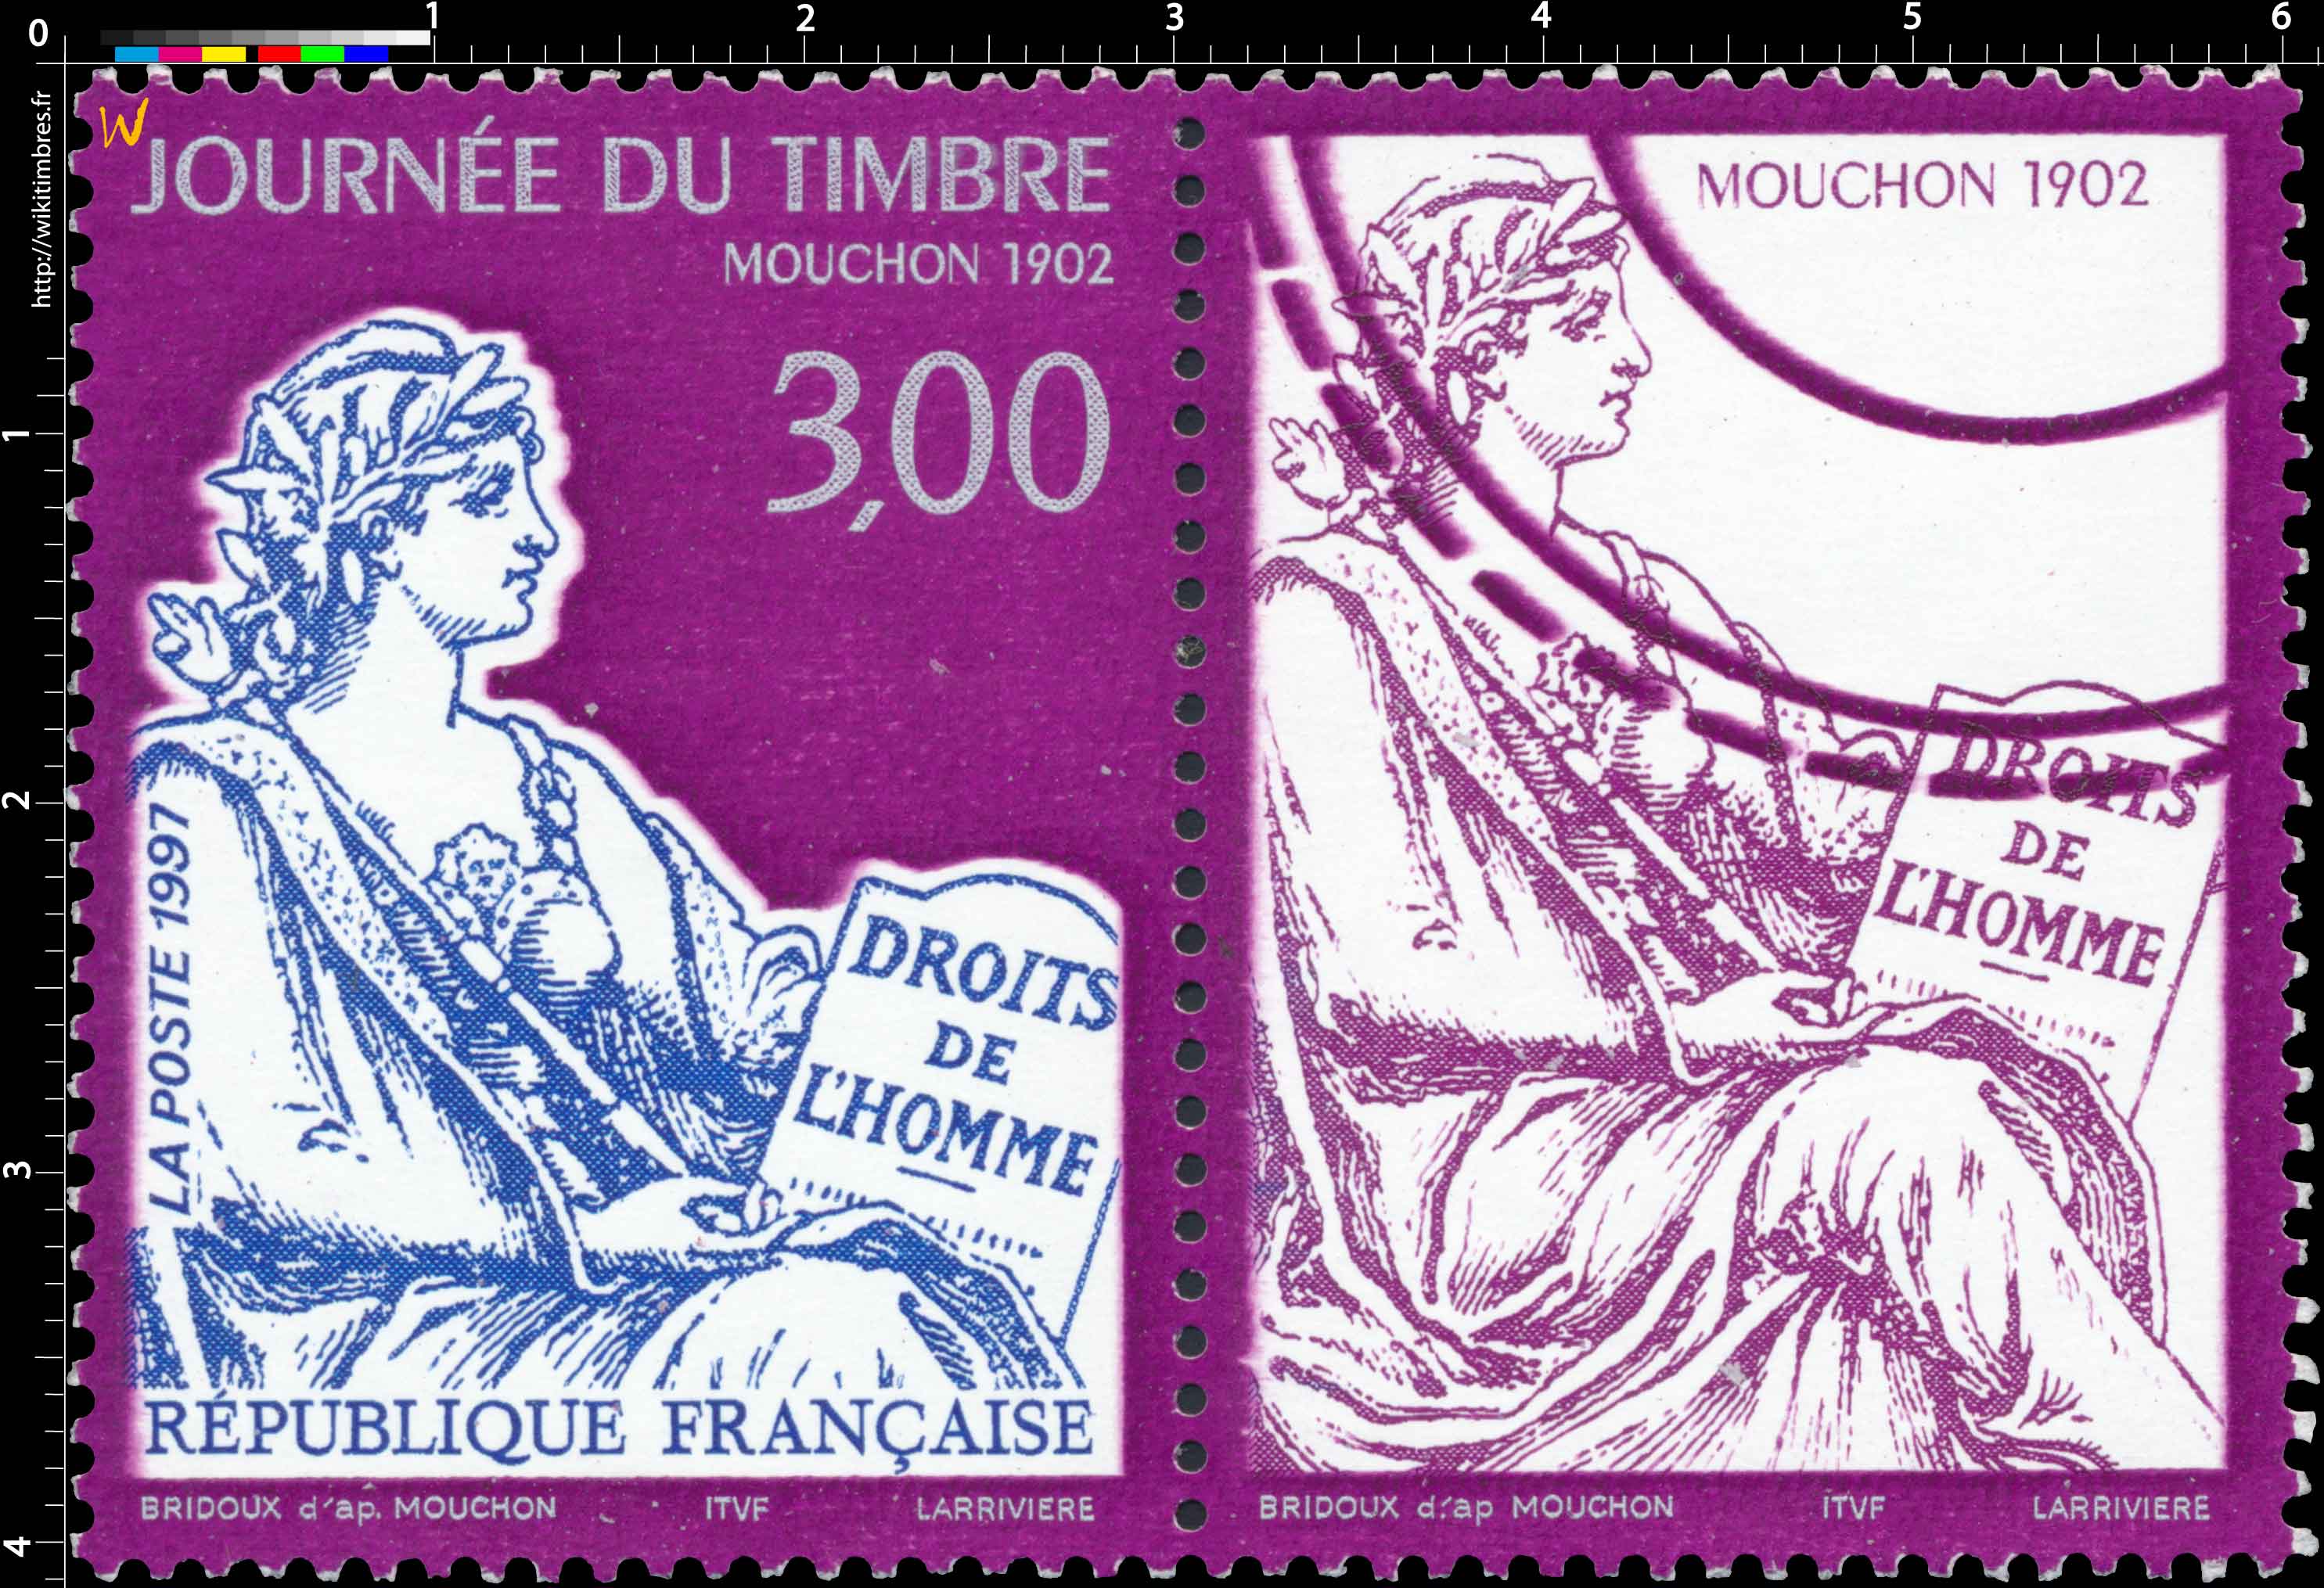 1997 JOURNÉE DU TIMBRE MOUCHON 1902 DROITS DE L'HOMME